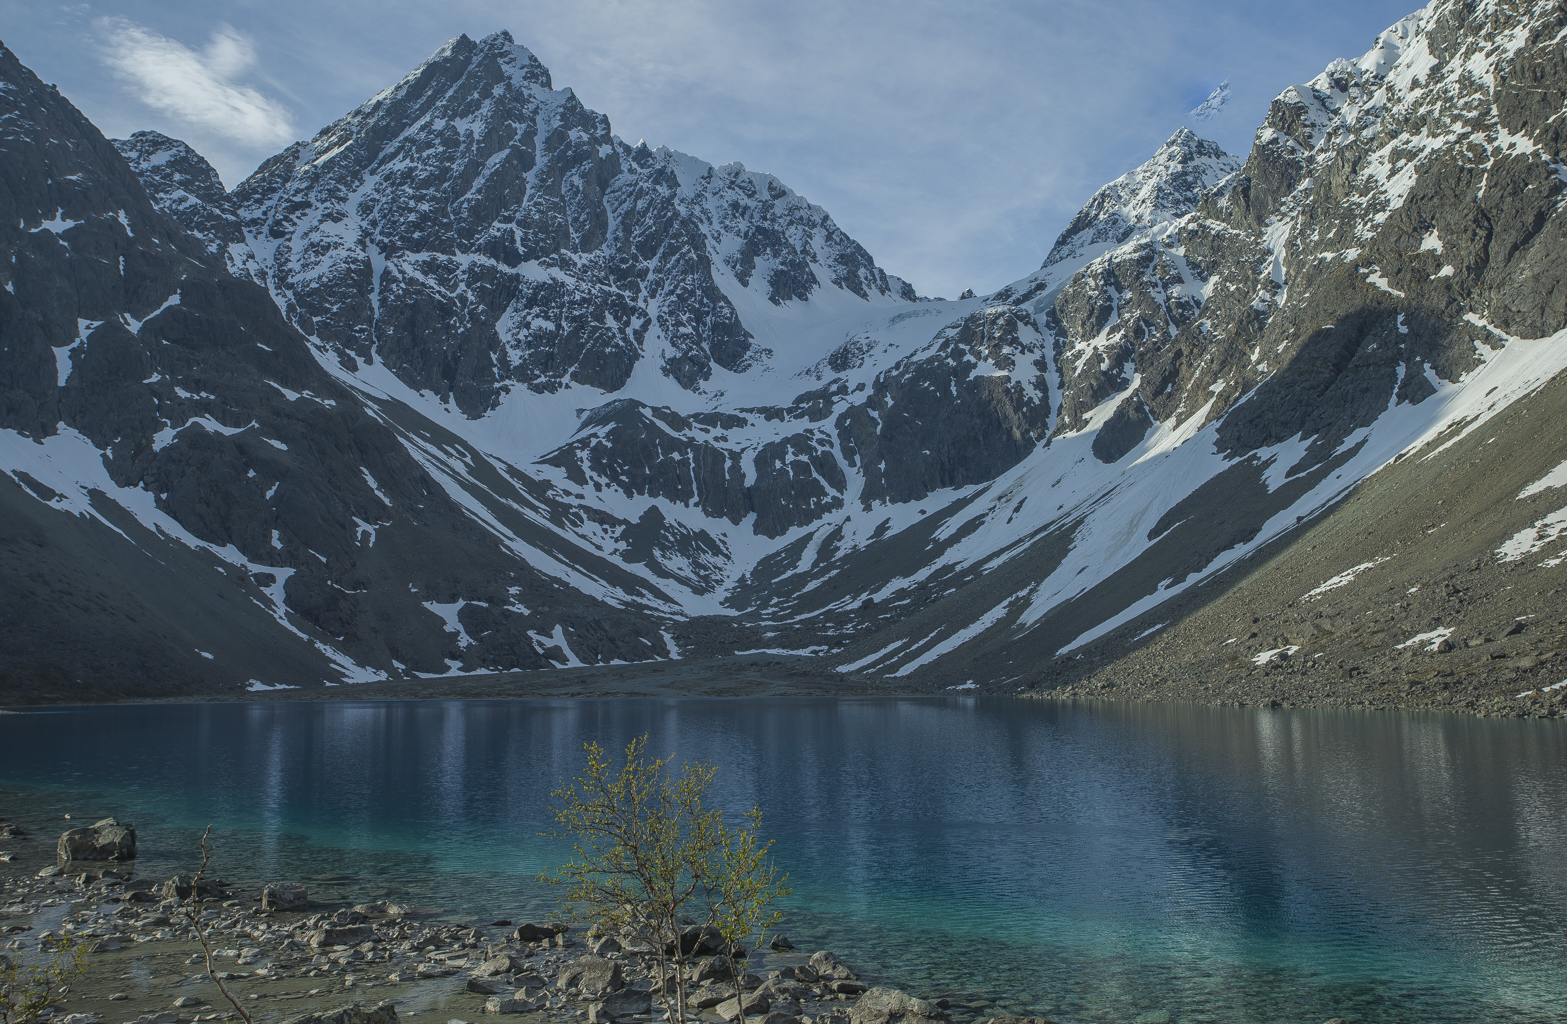 Blåvatnet, Lyngen Alps, Norway...